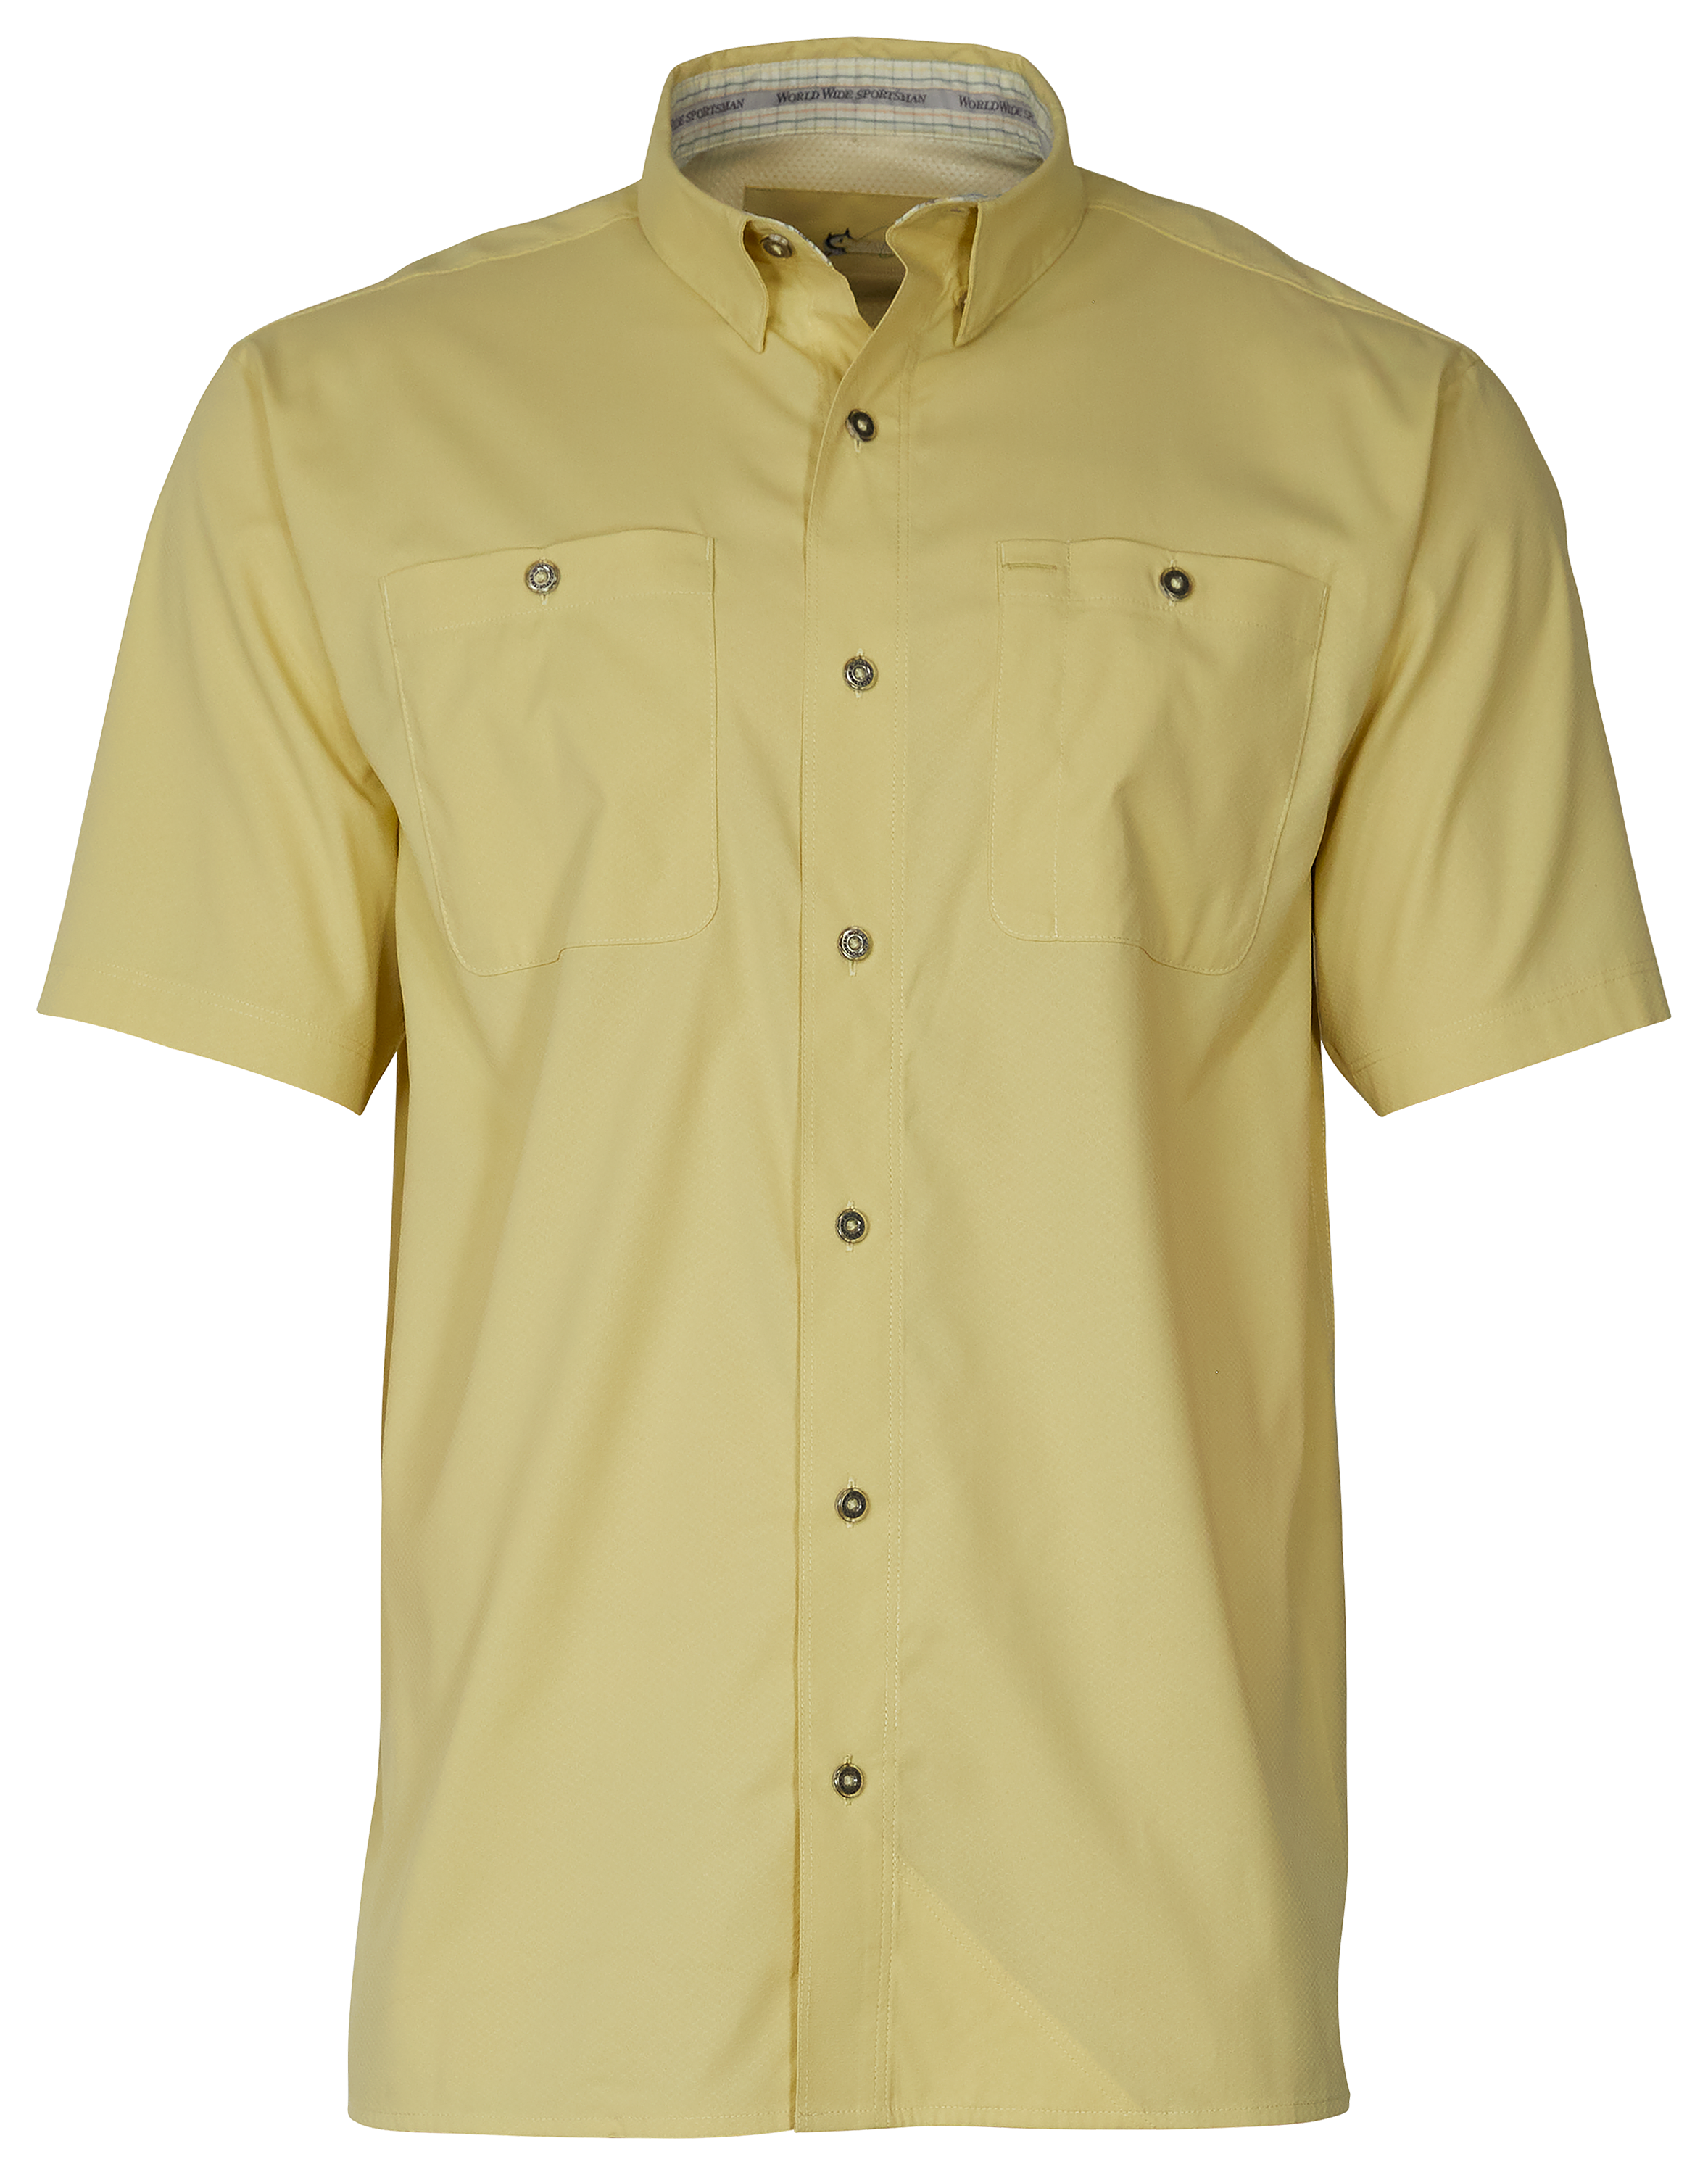 World Wide Sportsman Ultimate Angler Solid Short-Sleeve Shirt for Men - Golden Mist - M